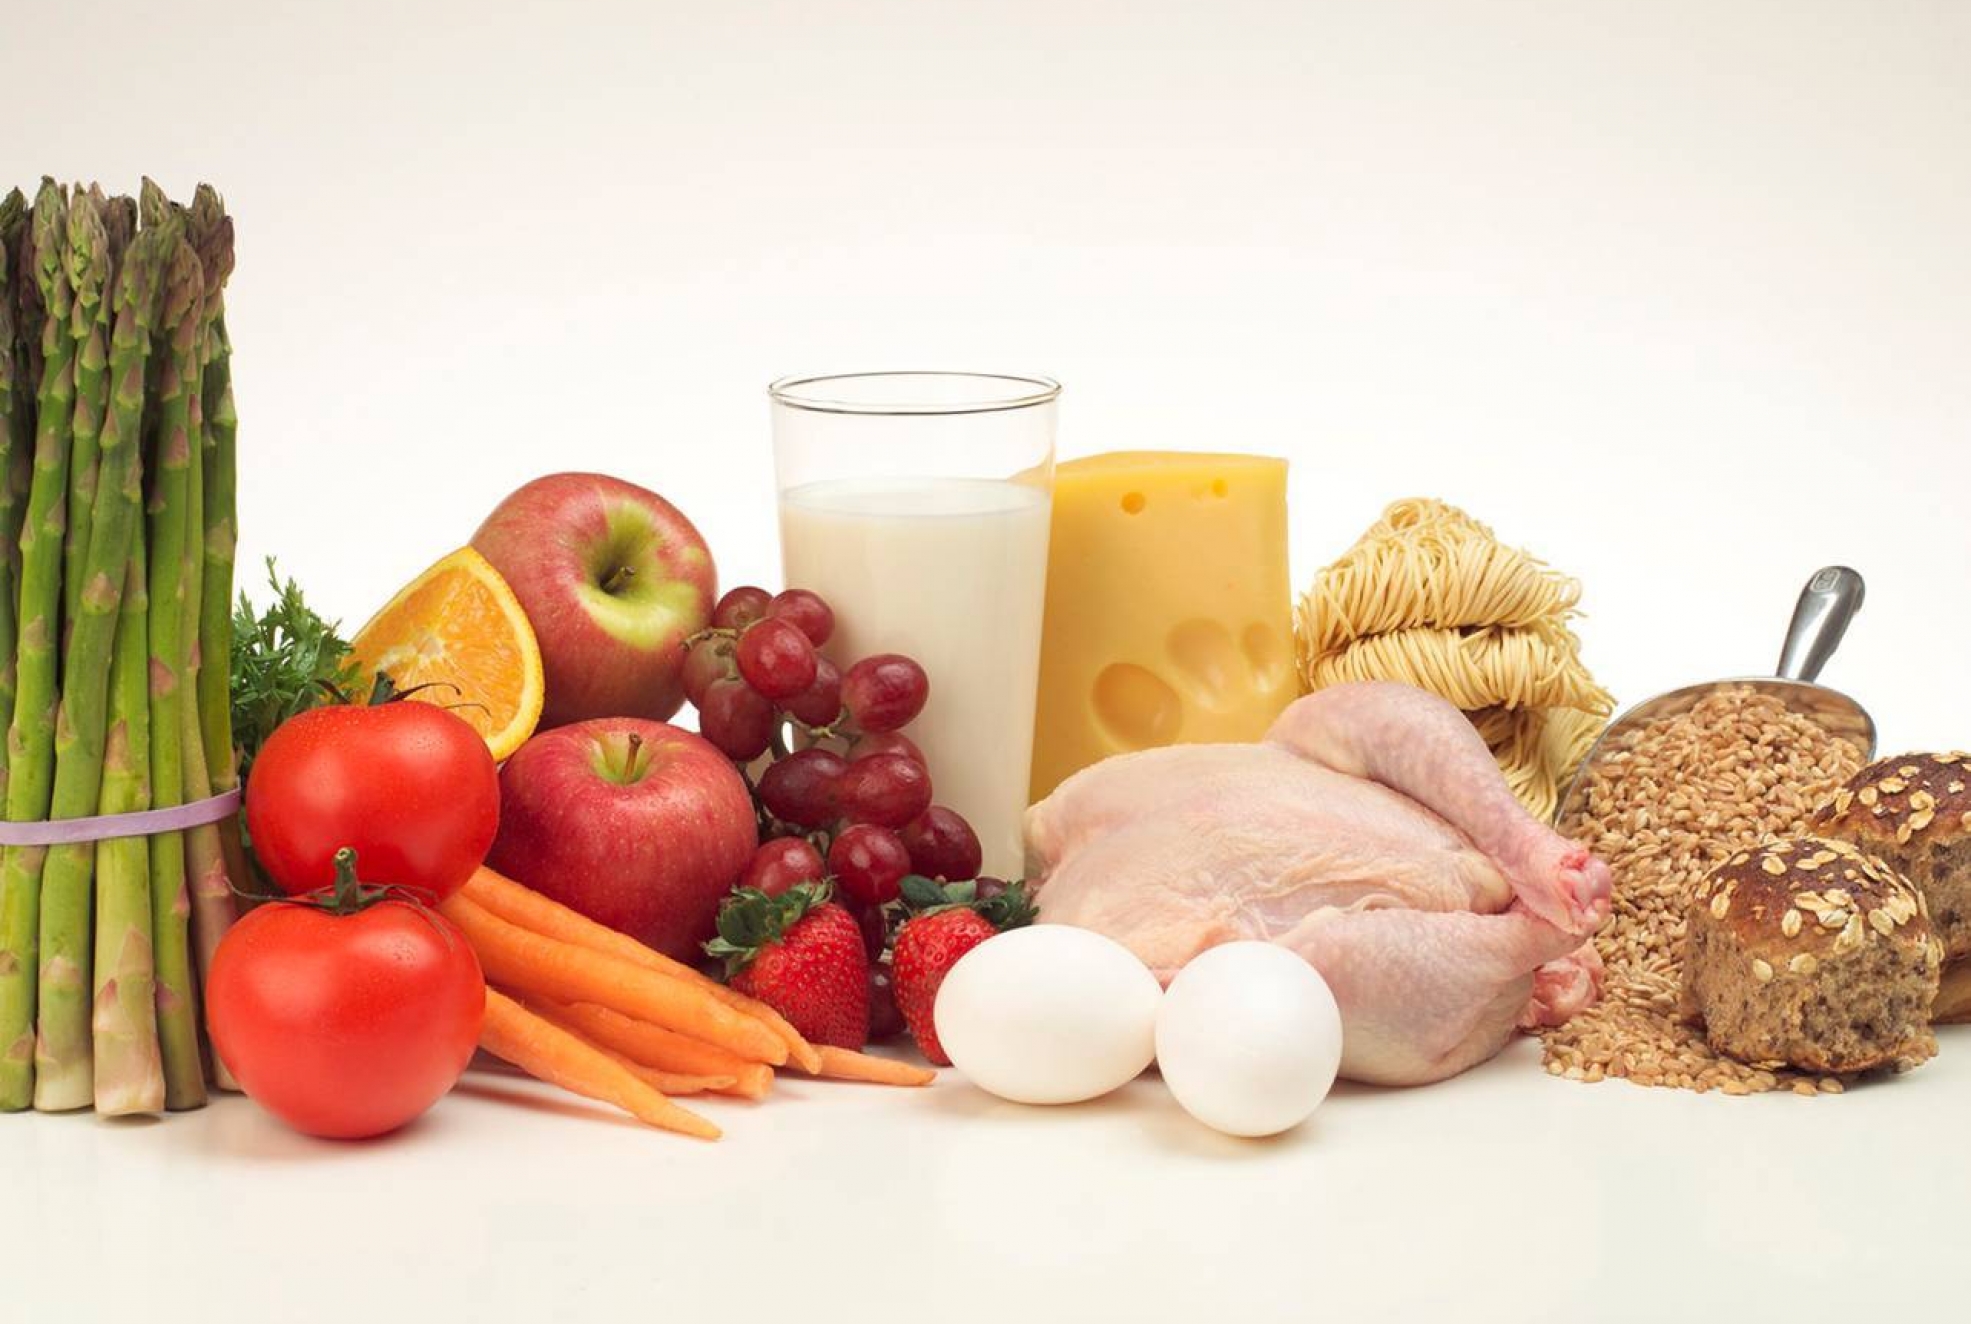 Рациональное использование продуктов. Здоровая пища. Продукты питания. Овощи фрукты мясо молоко. Полезные продукты.